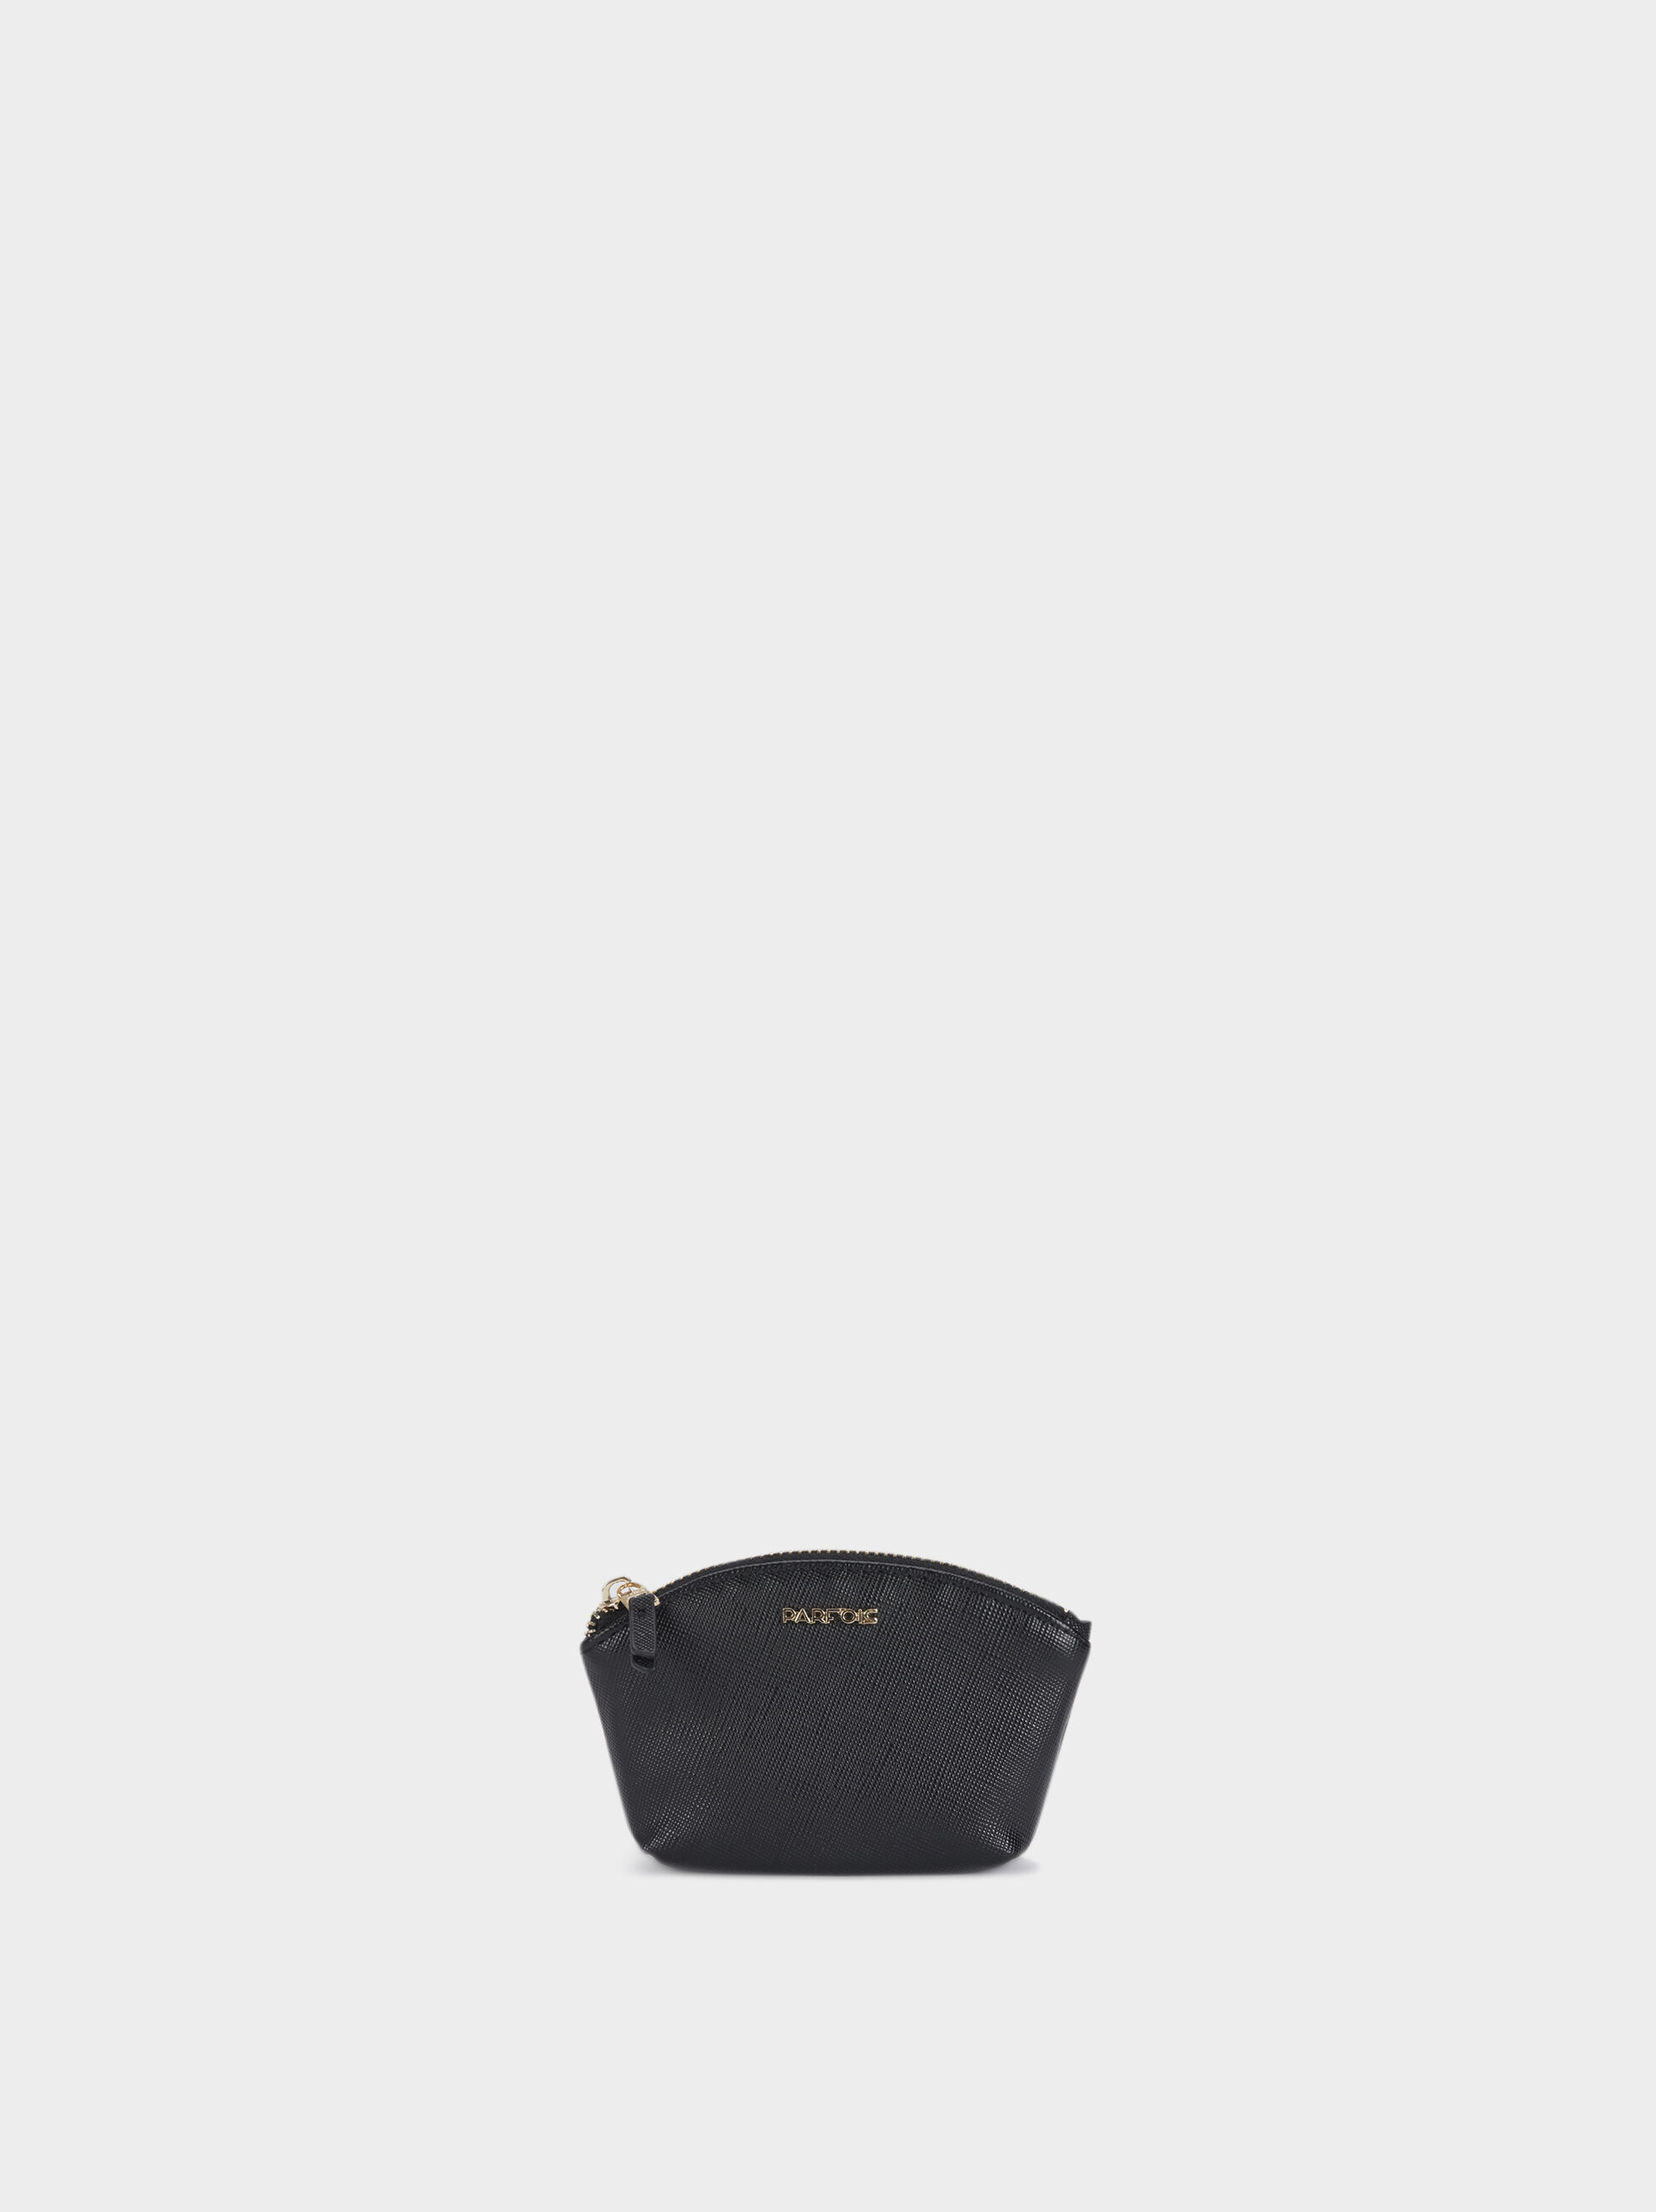 black coin purse